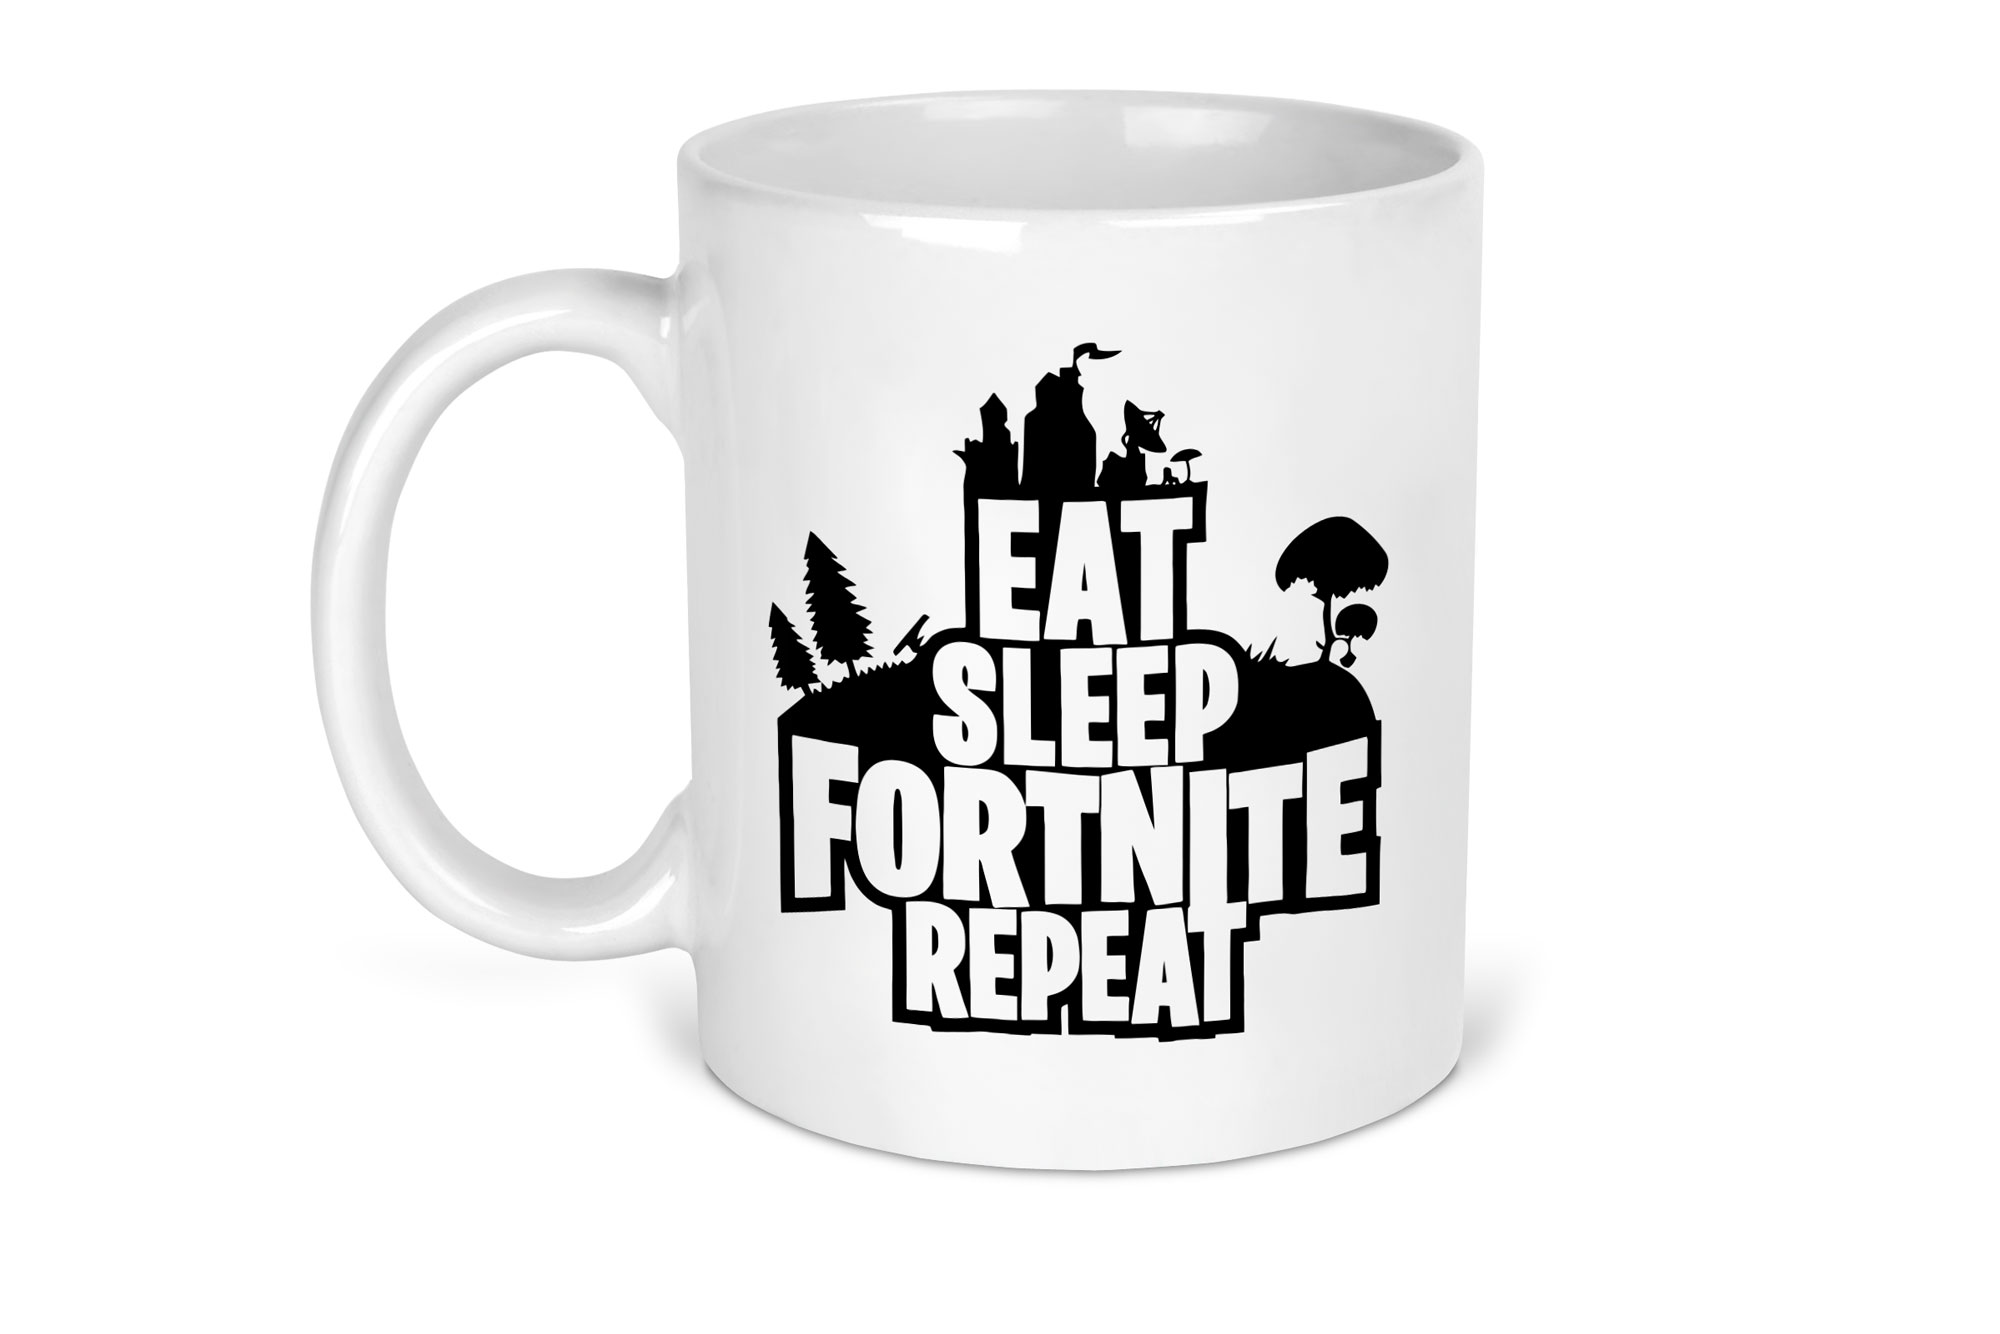 Fortnite Gaming Mug